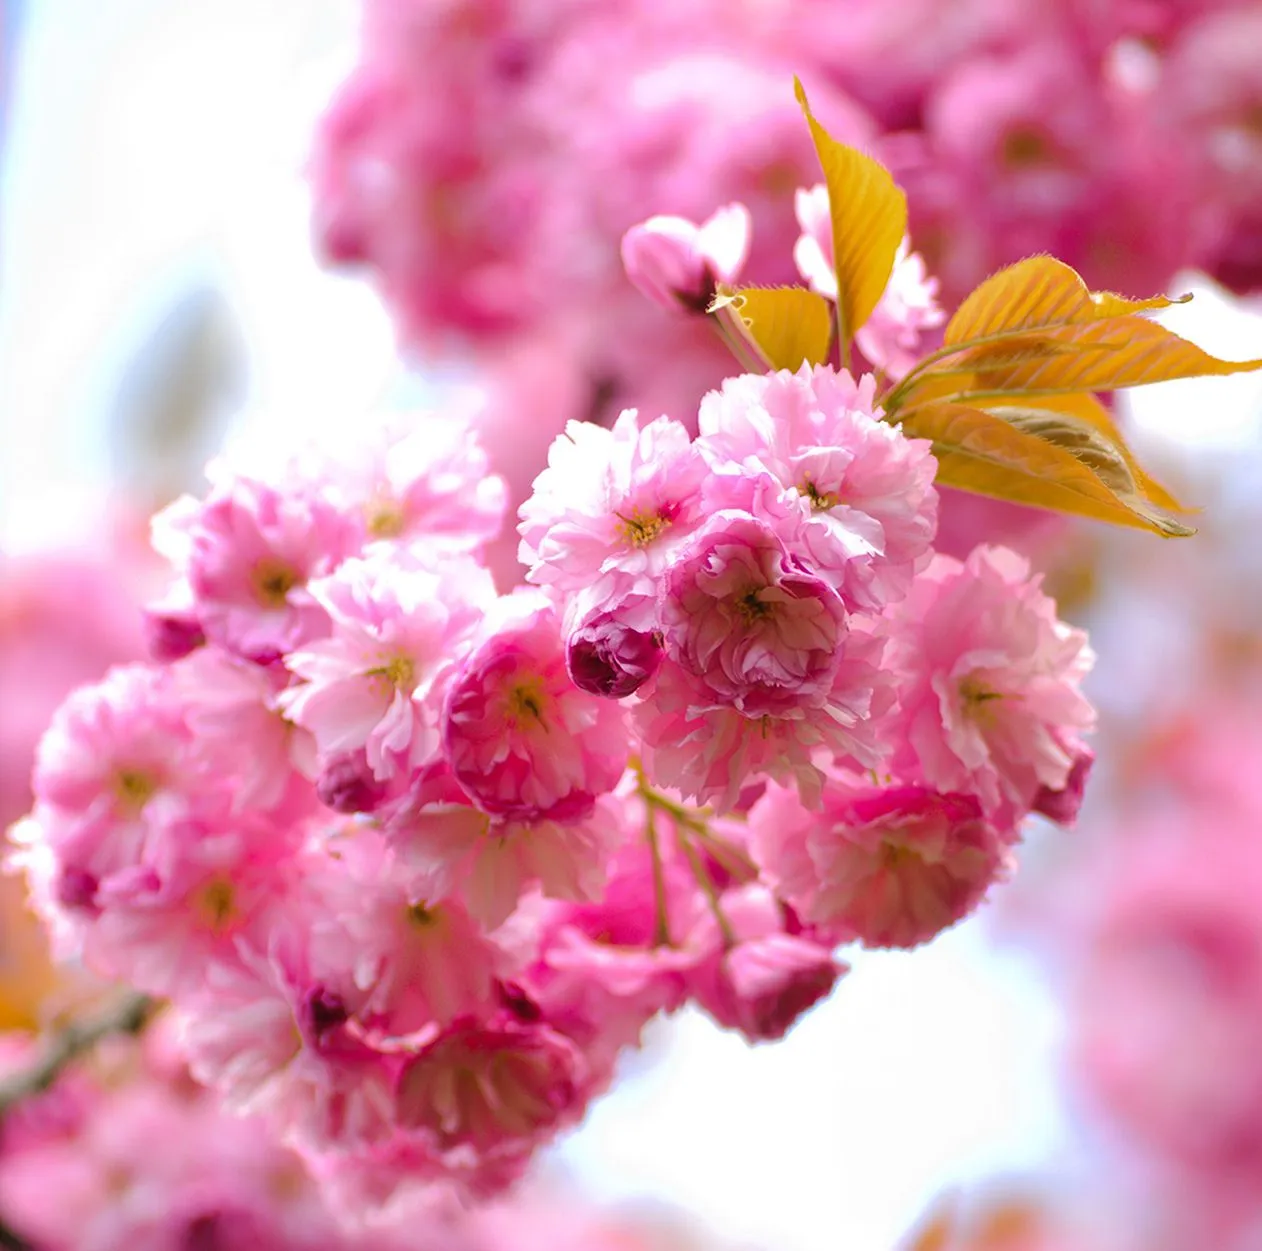 9 fotografías gratis de flores color rosa, fucsia y lila. | Banco ...